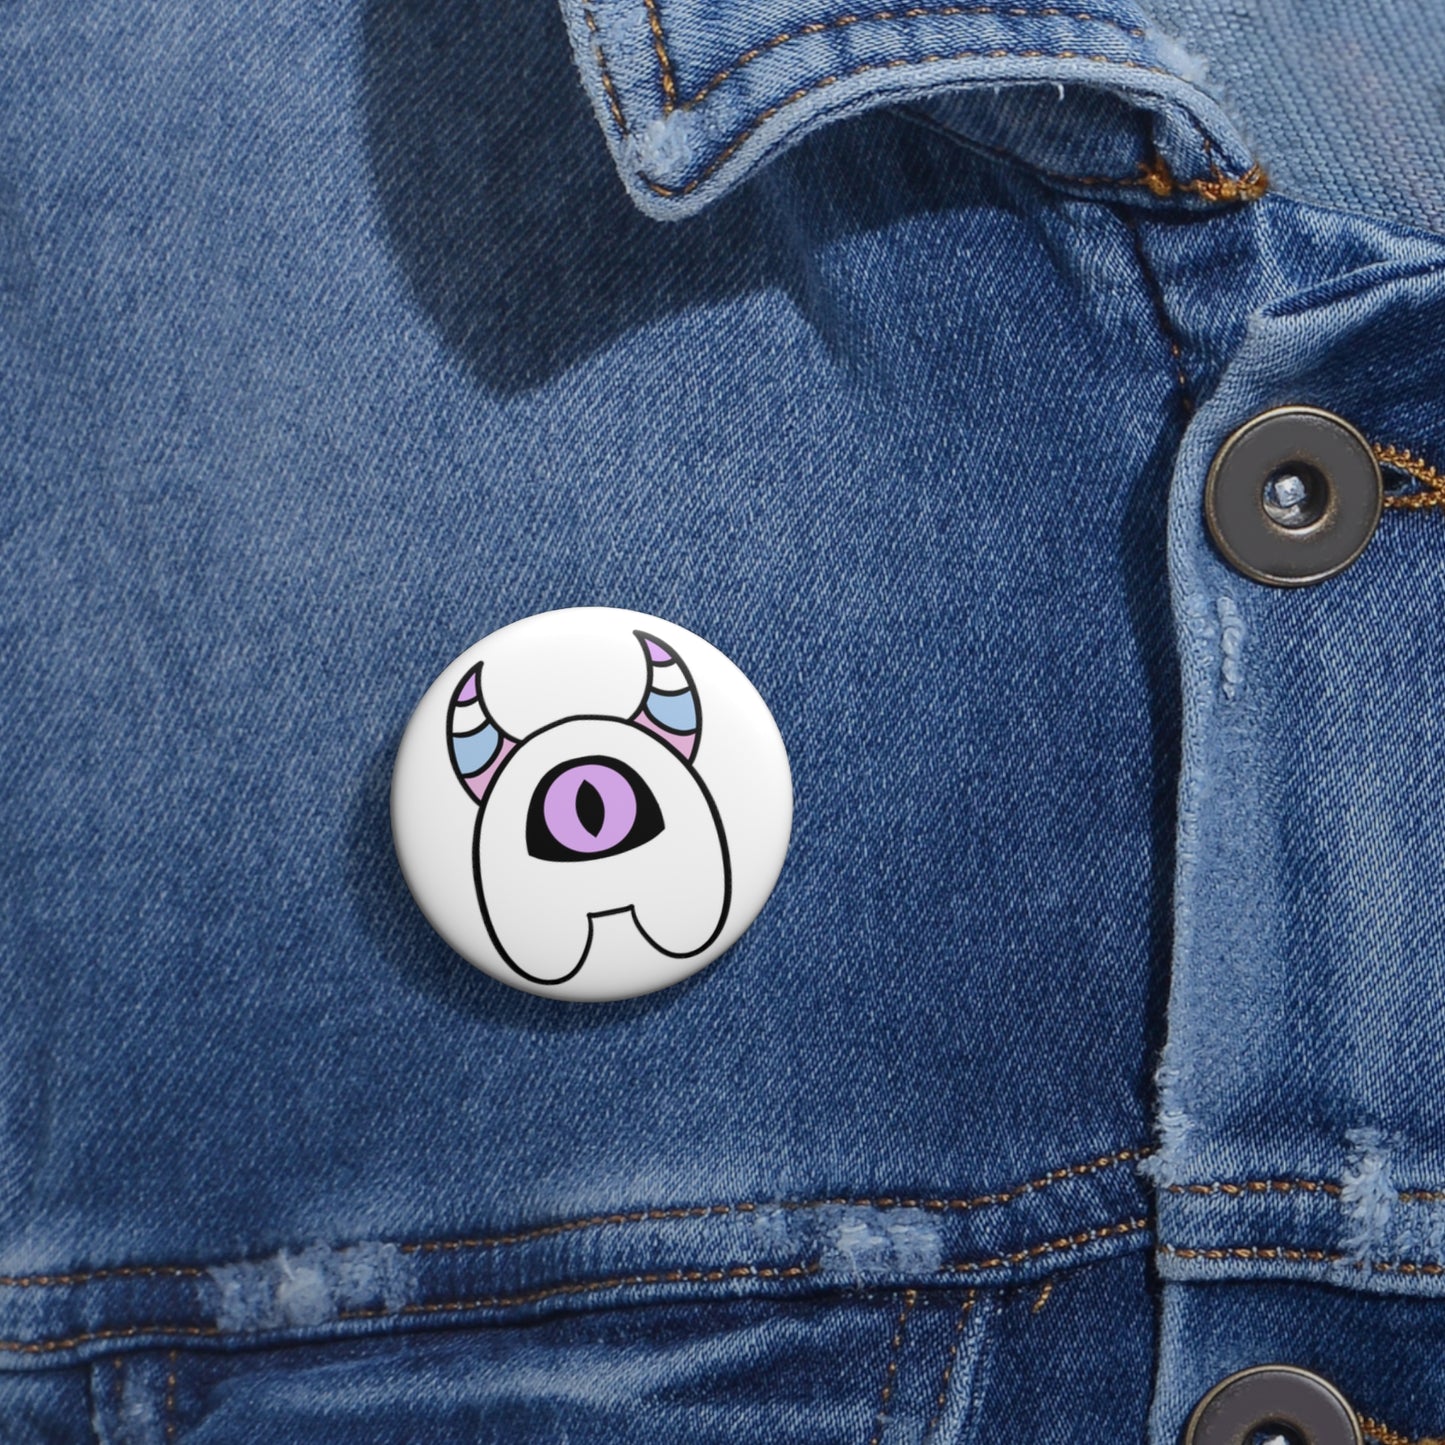 Intersex Pride Pin Button | Minmon